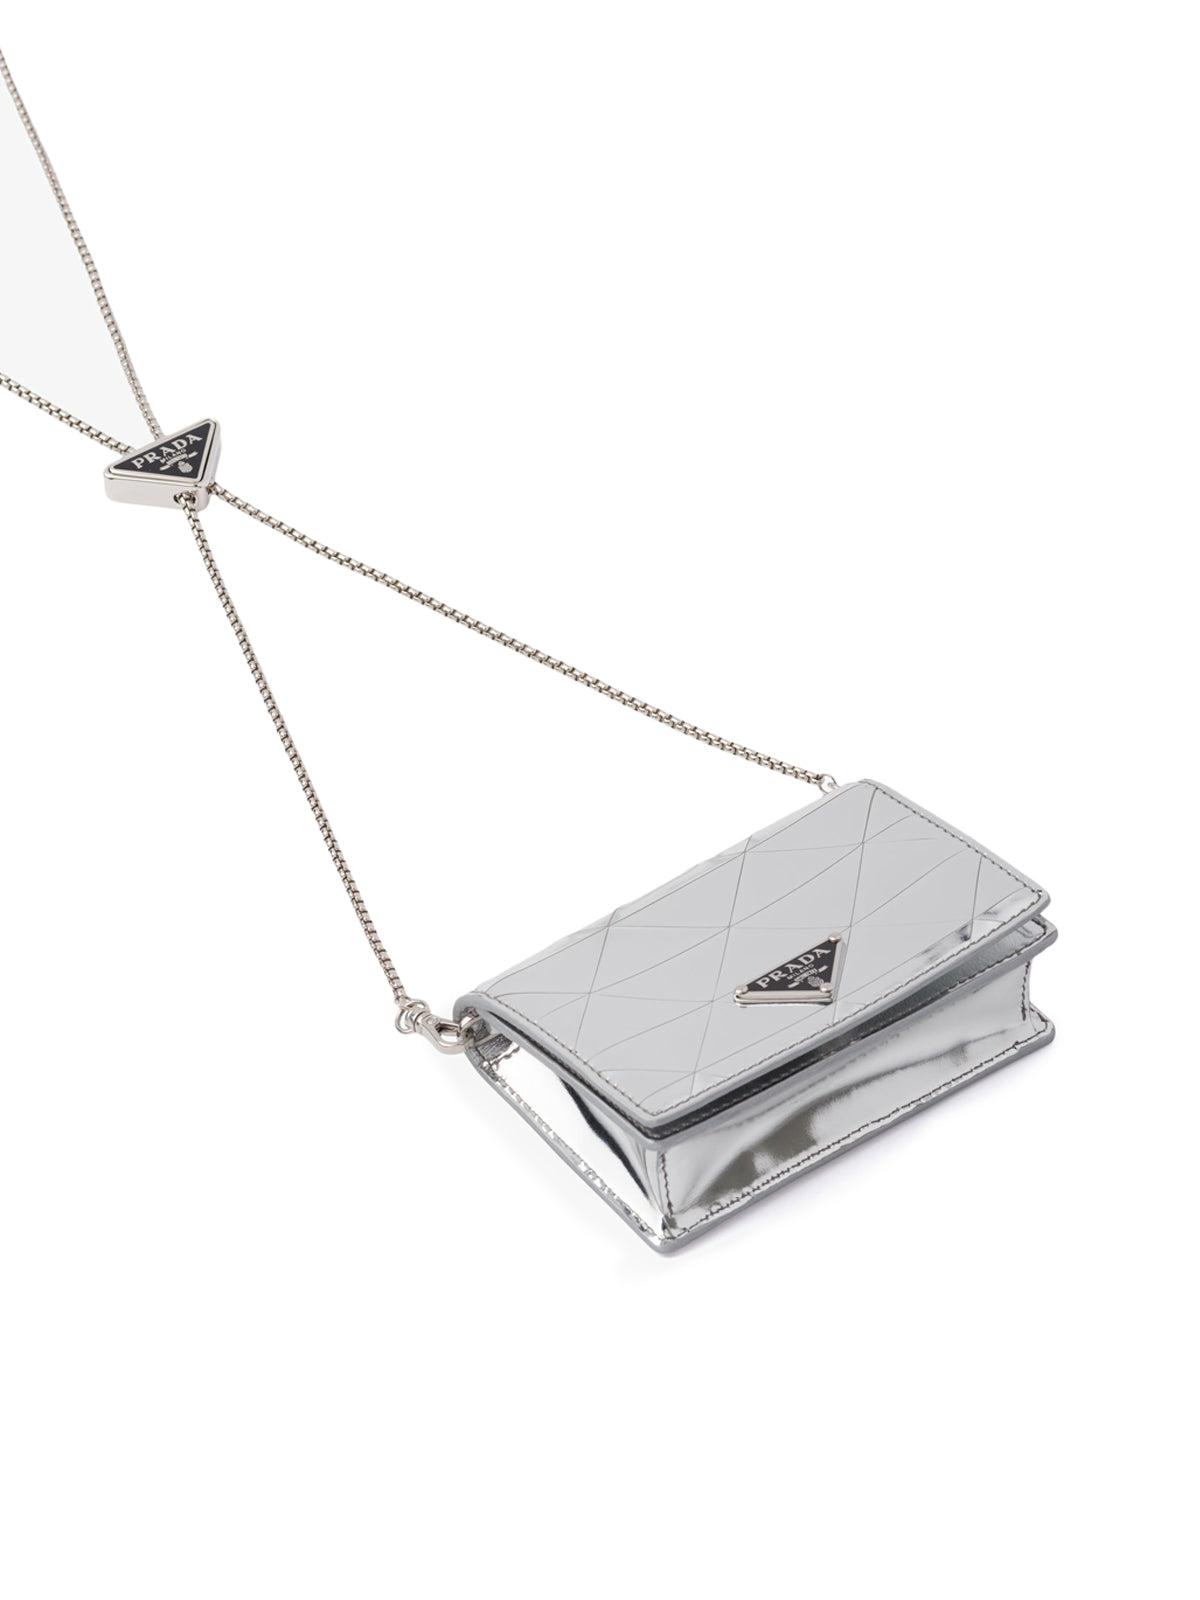 Leather card holder with shoulder strap